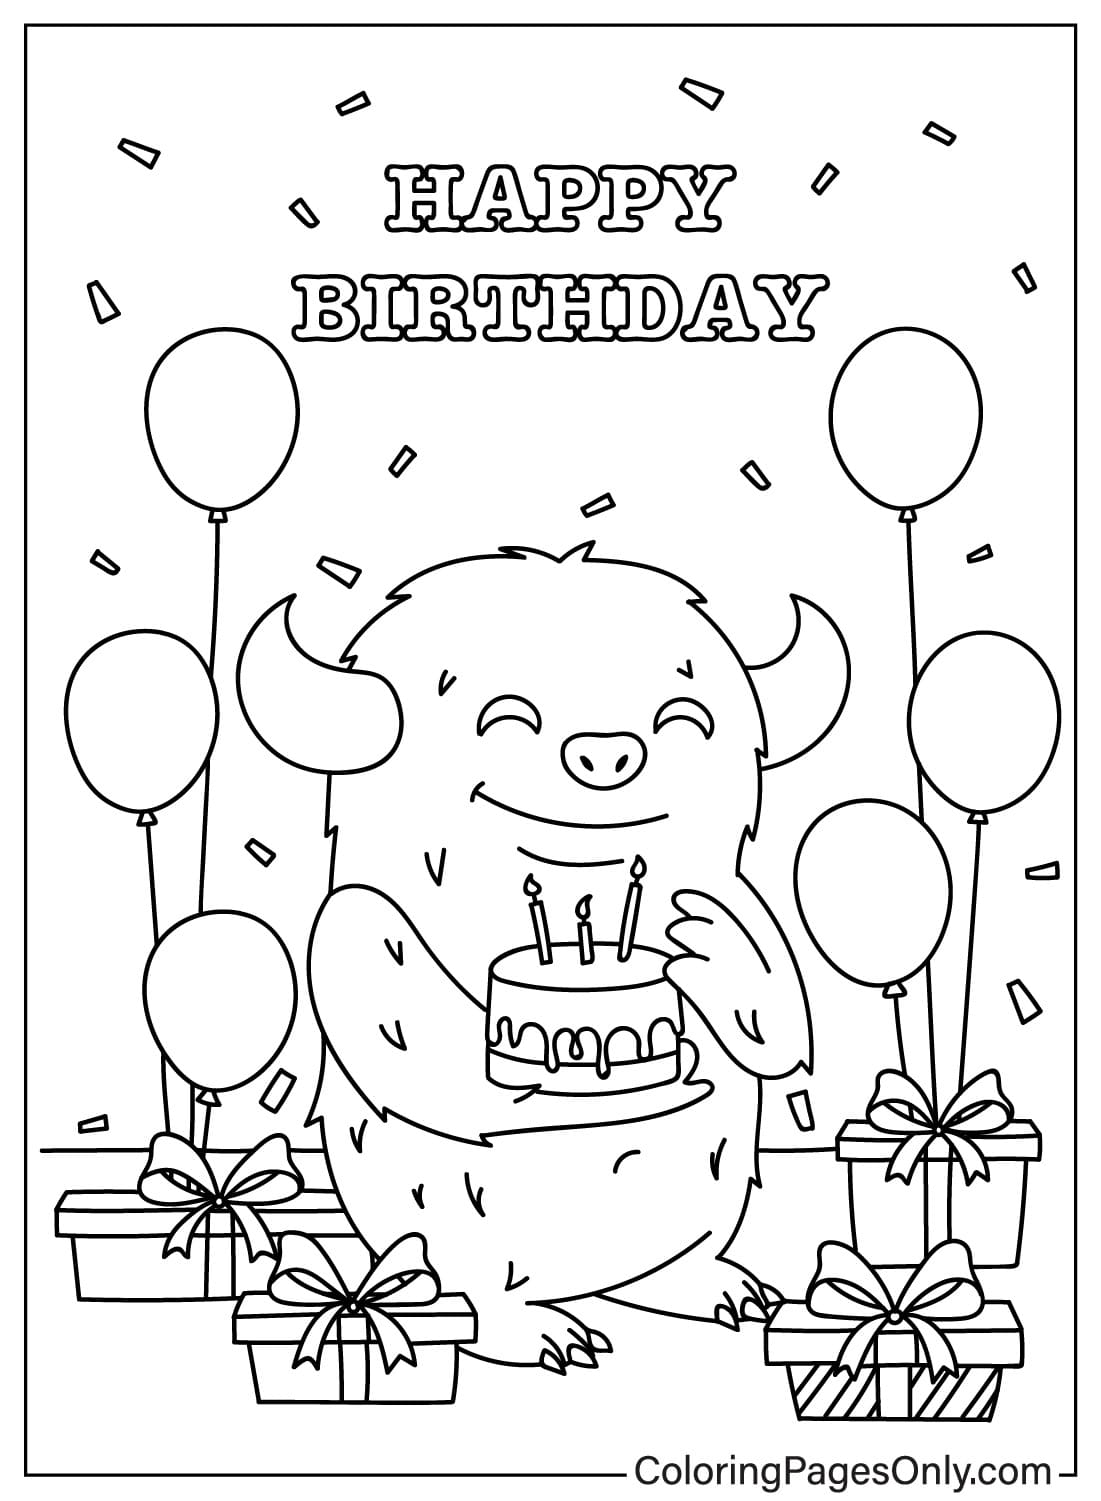 Folha para colorir de cartão de feliz aniversário para crianças do cartão de feliz aniversário